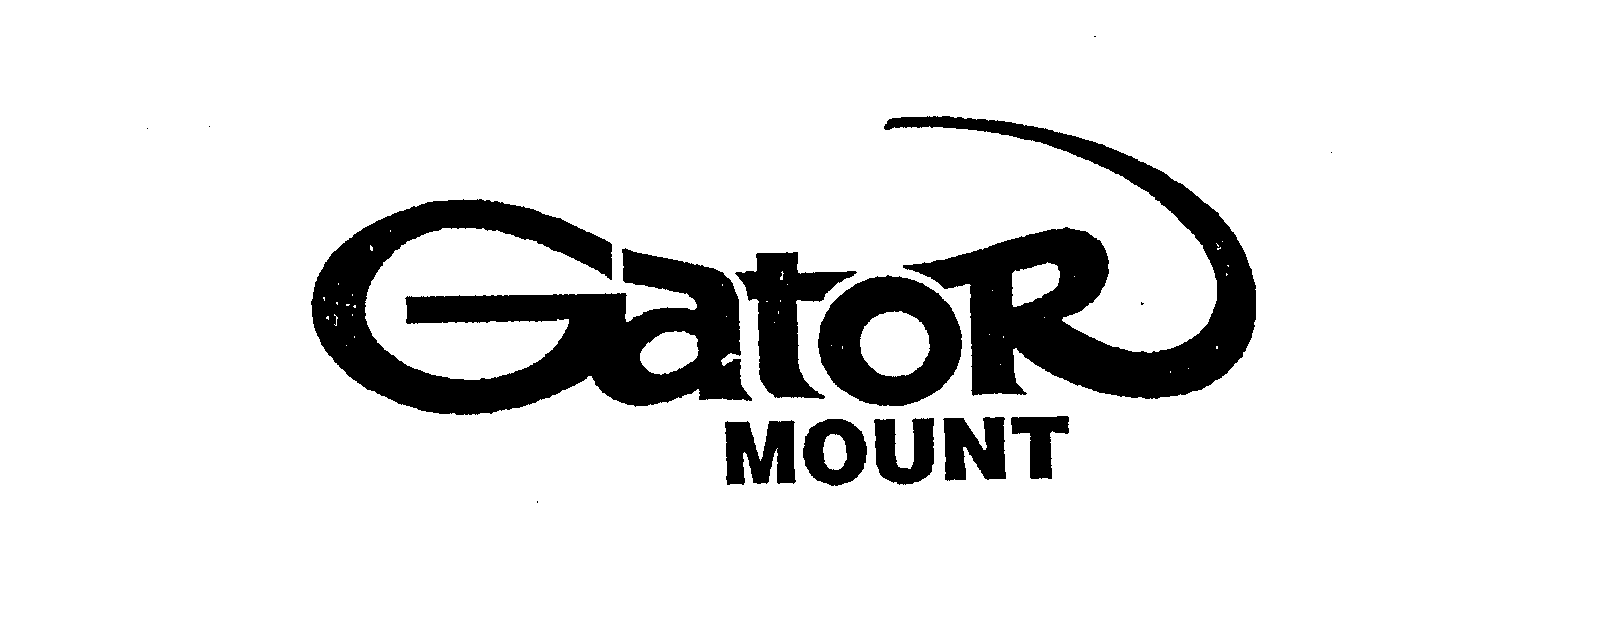  GATOR MOUNT